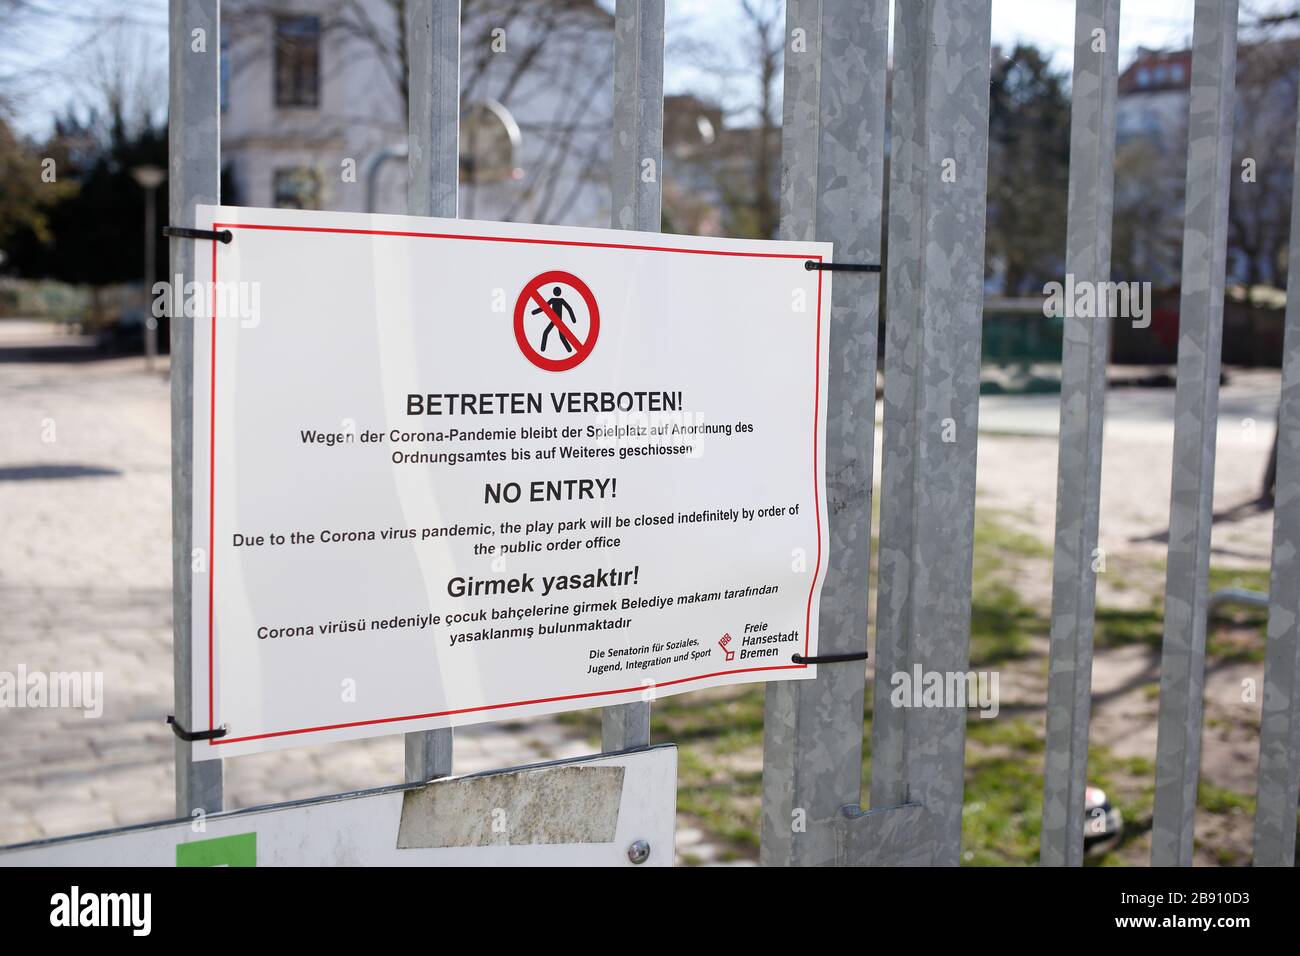 Bild Spielplatz wegen Coronavirus geschlossen, betten verboten Stockfoto